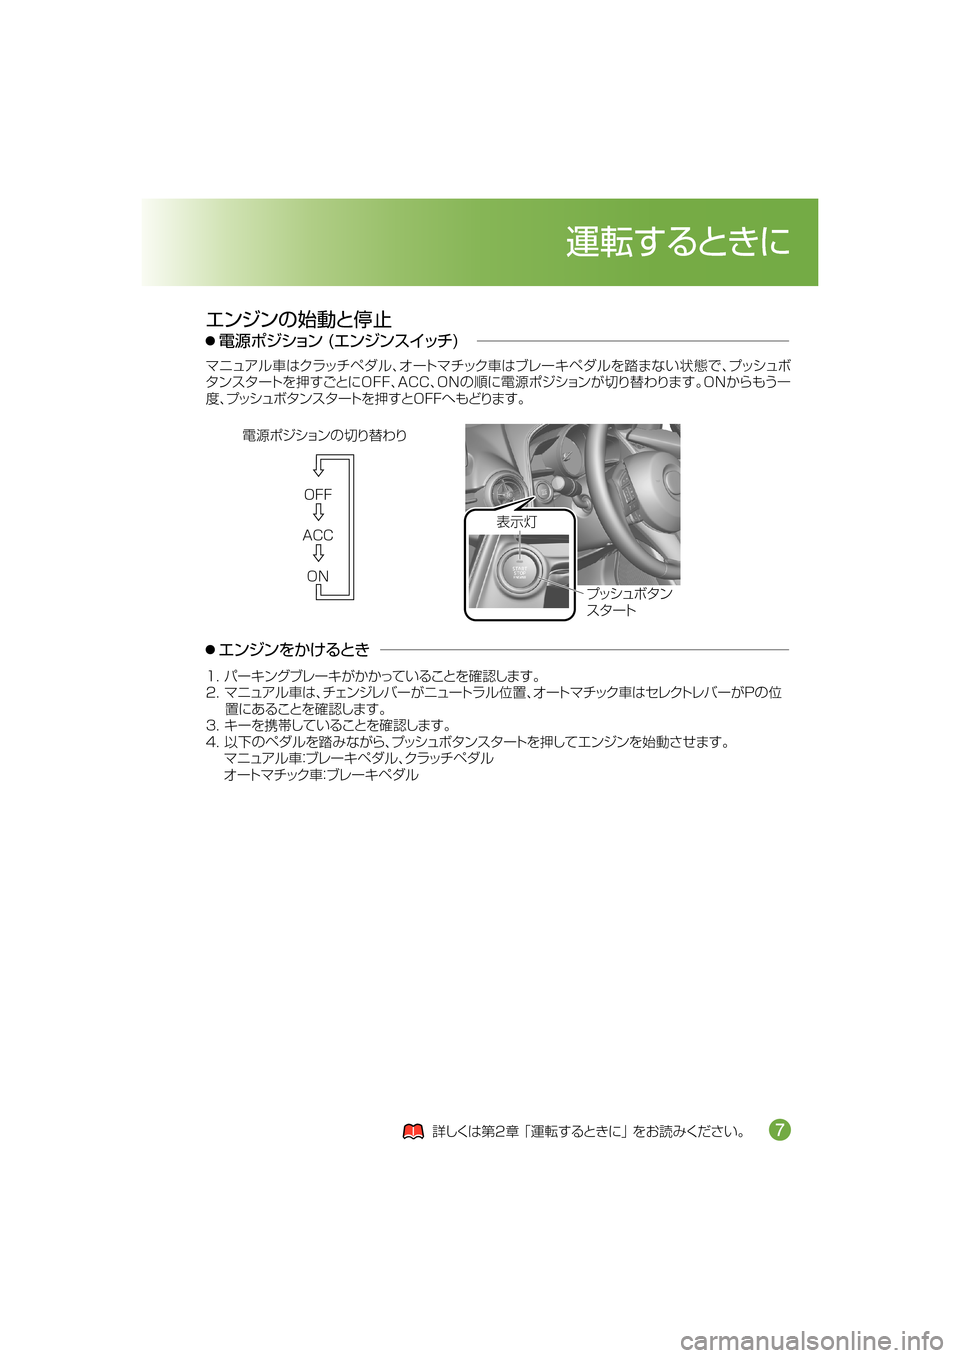 MAZDA MODEL DEMIO 2014  デミオ｜取扱説明書 (in Japanese) �0��
�"�$�$
�0�/
?o